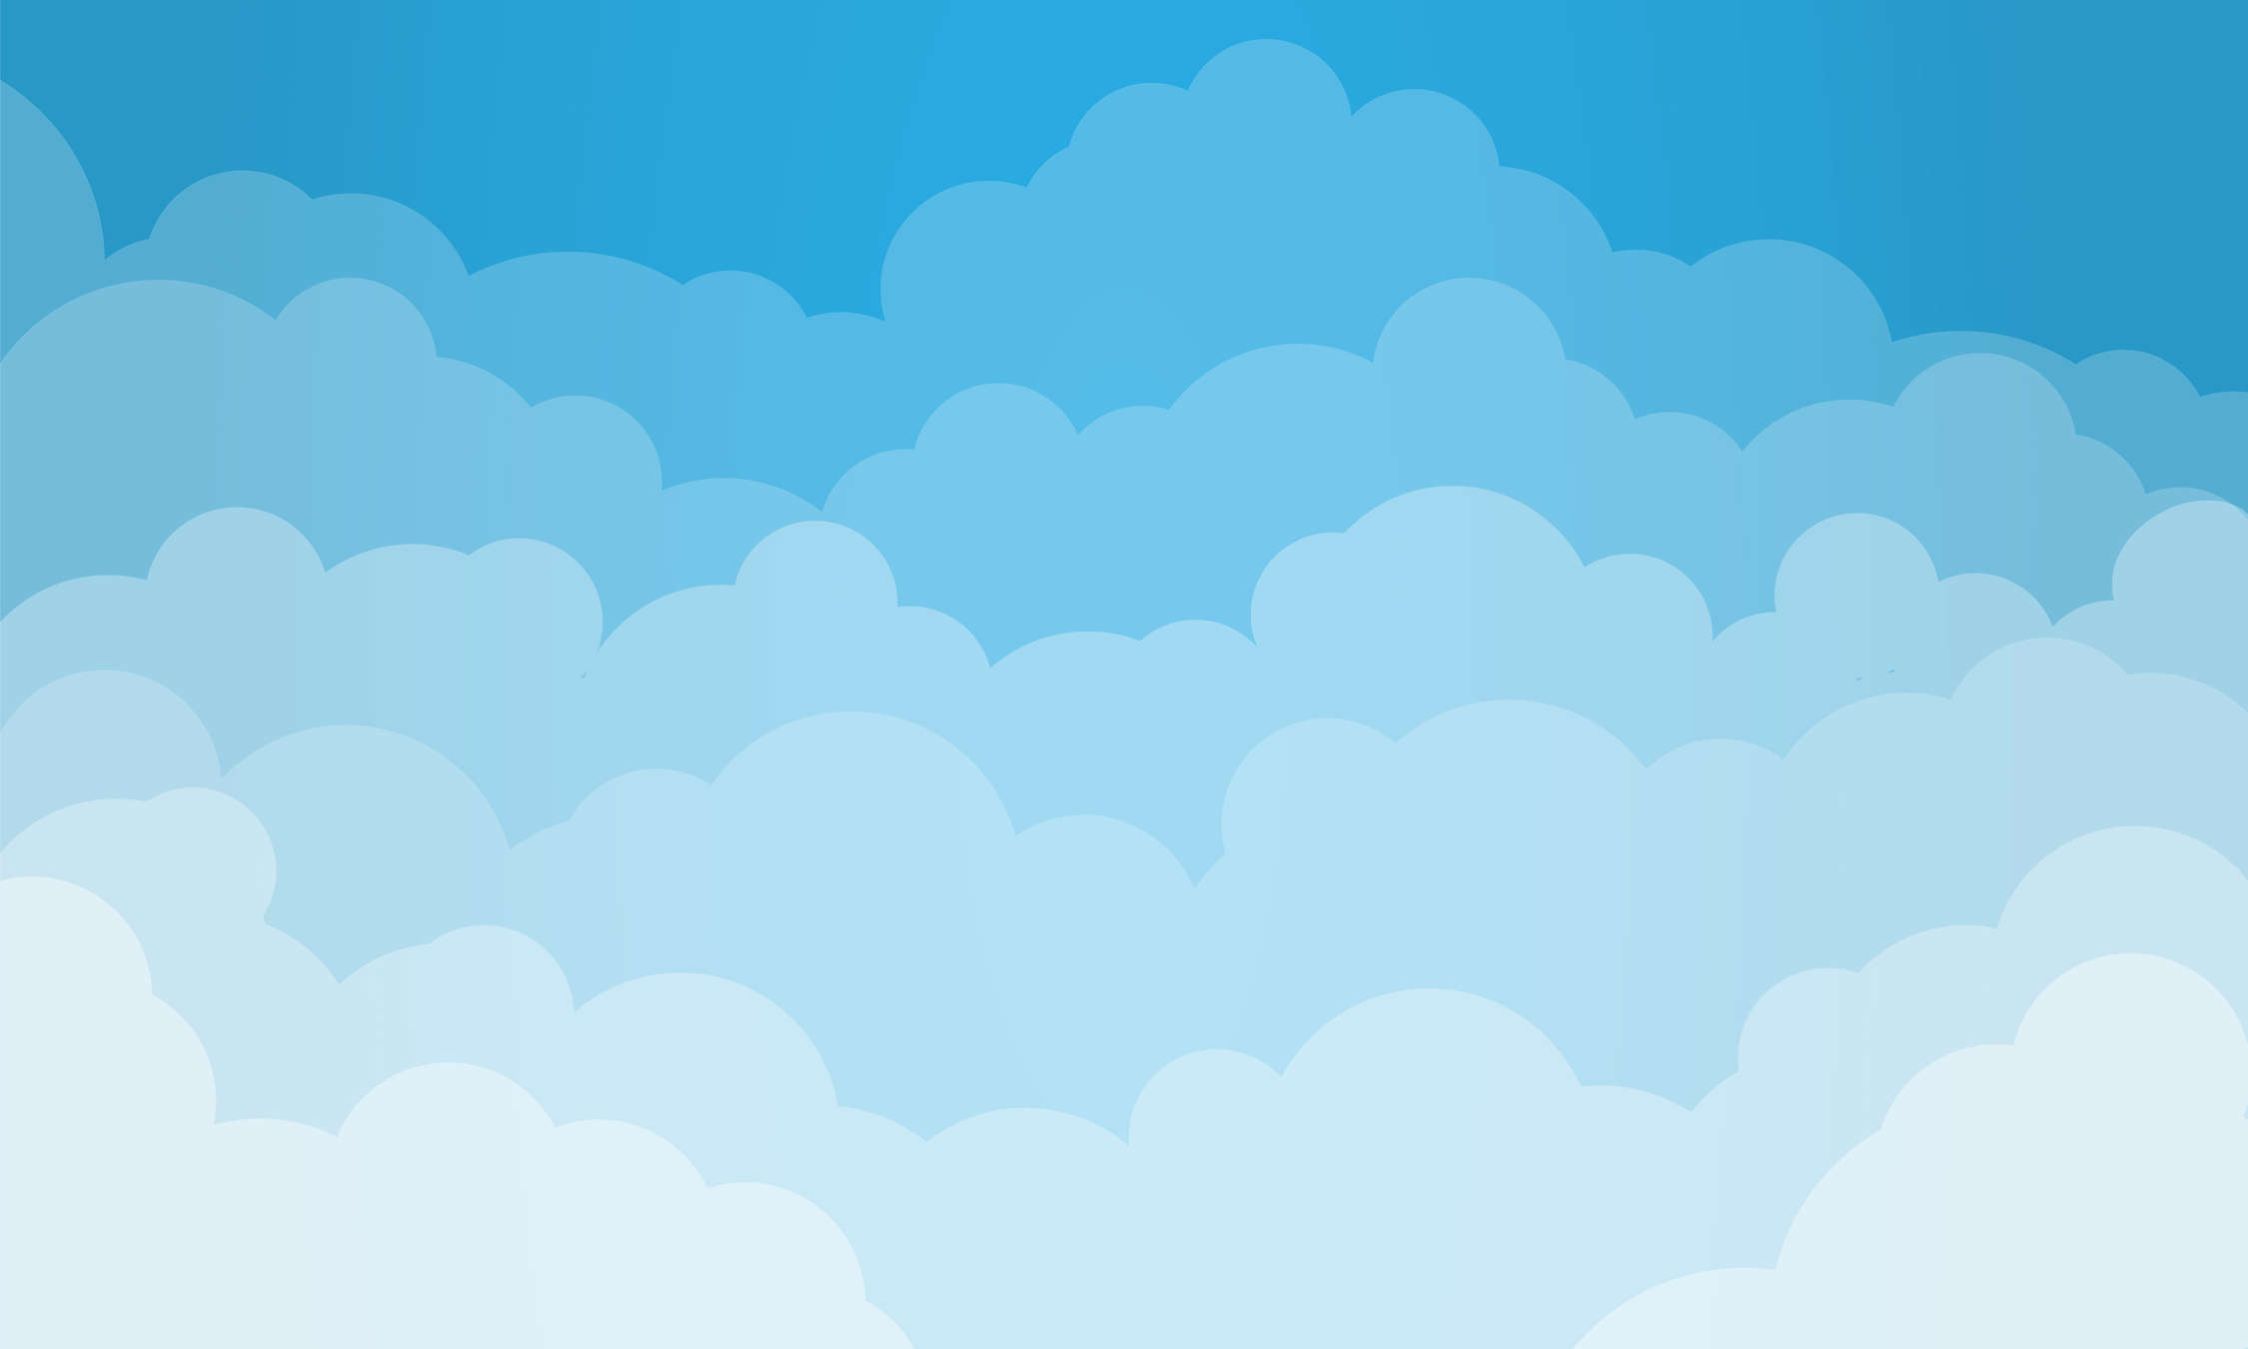             Fototapete Himmel mit Wolken im Comic-Stil – Strukturiertes Vlies
        